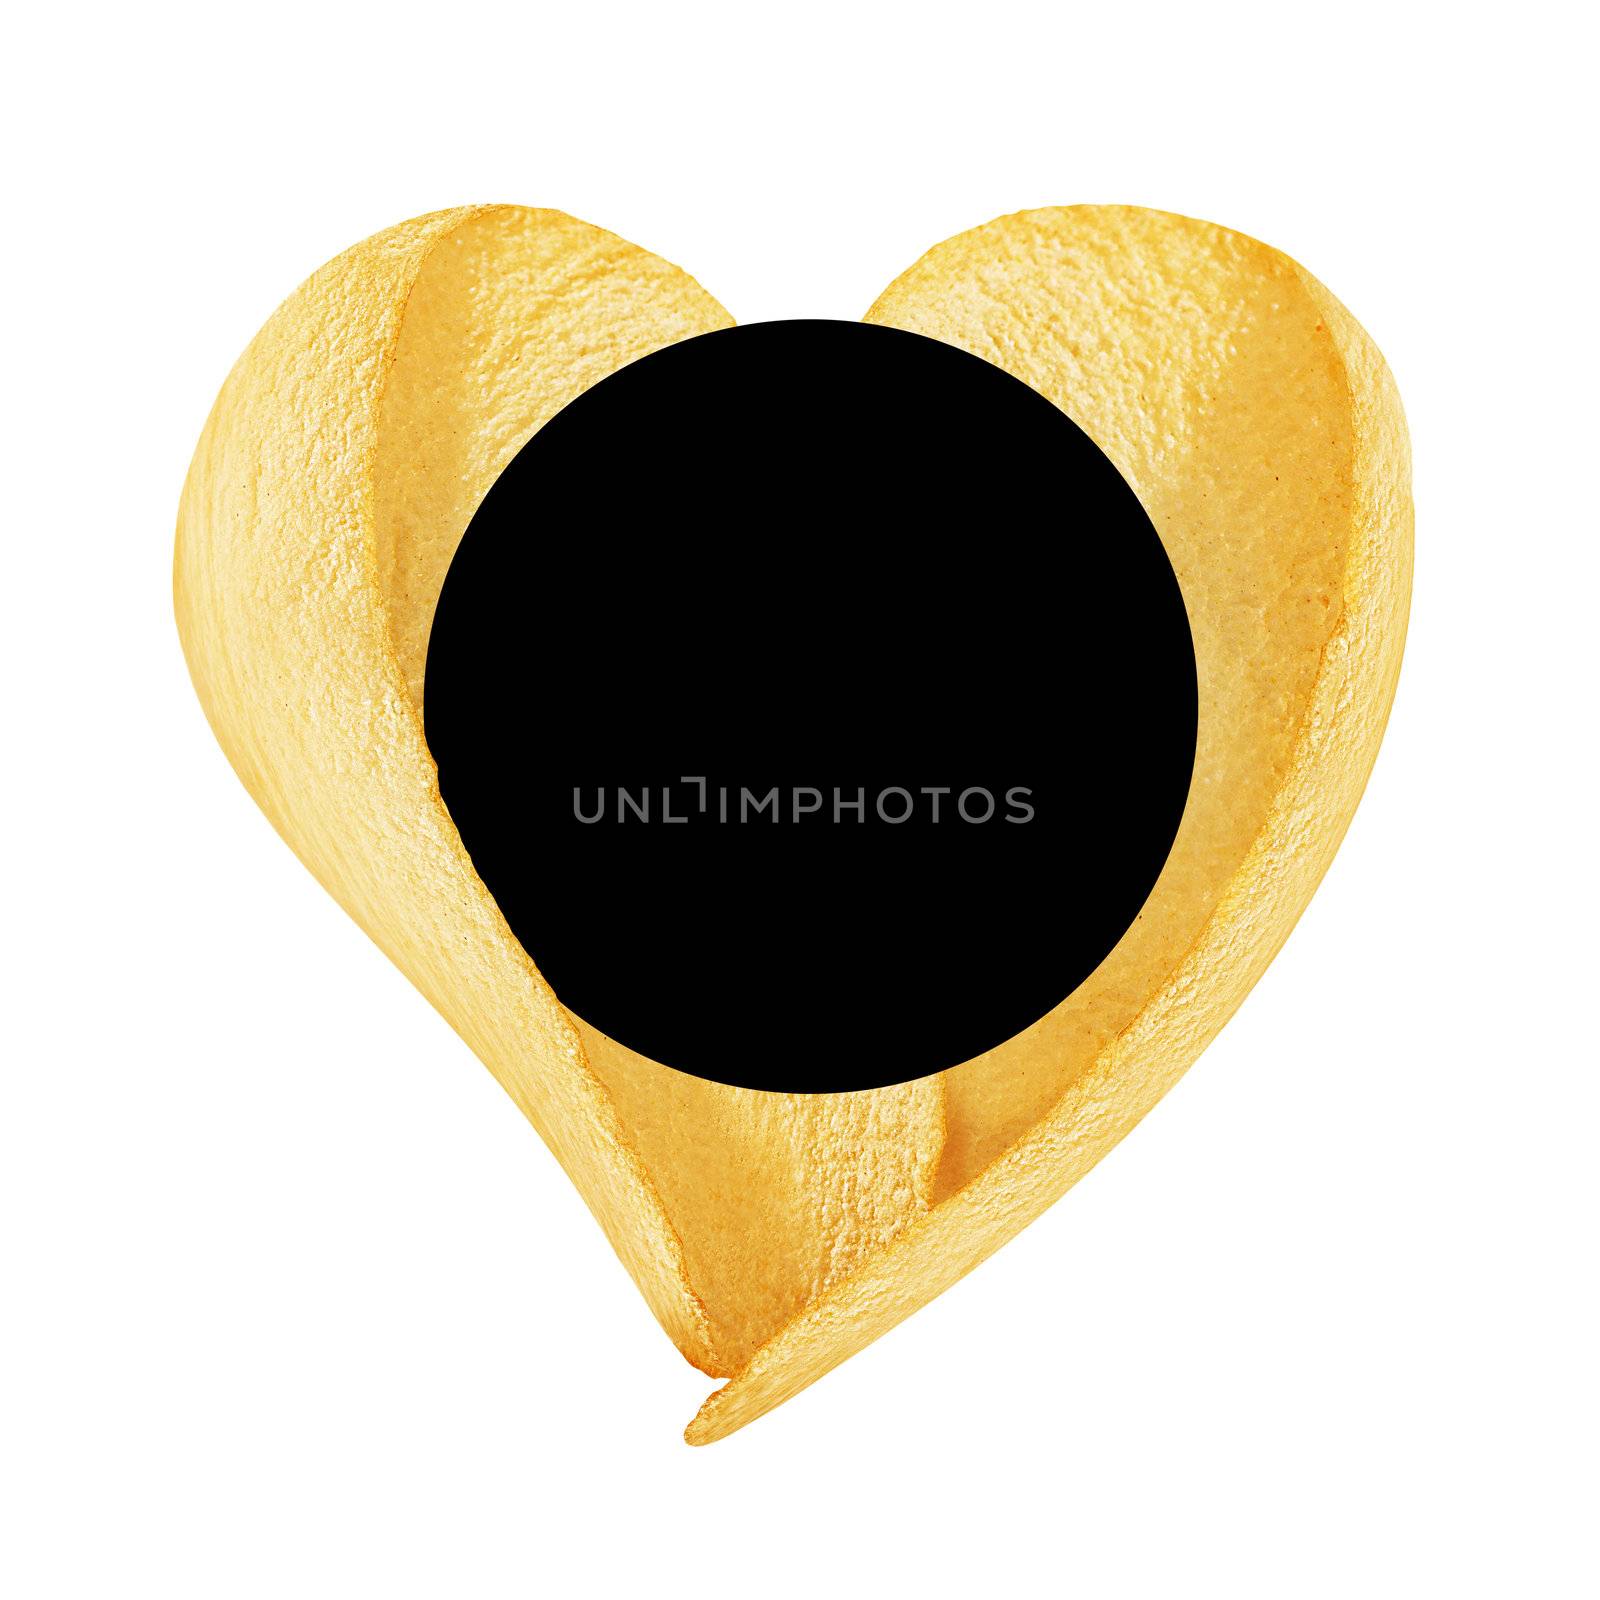 billboard potato chips by butenkow